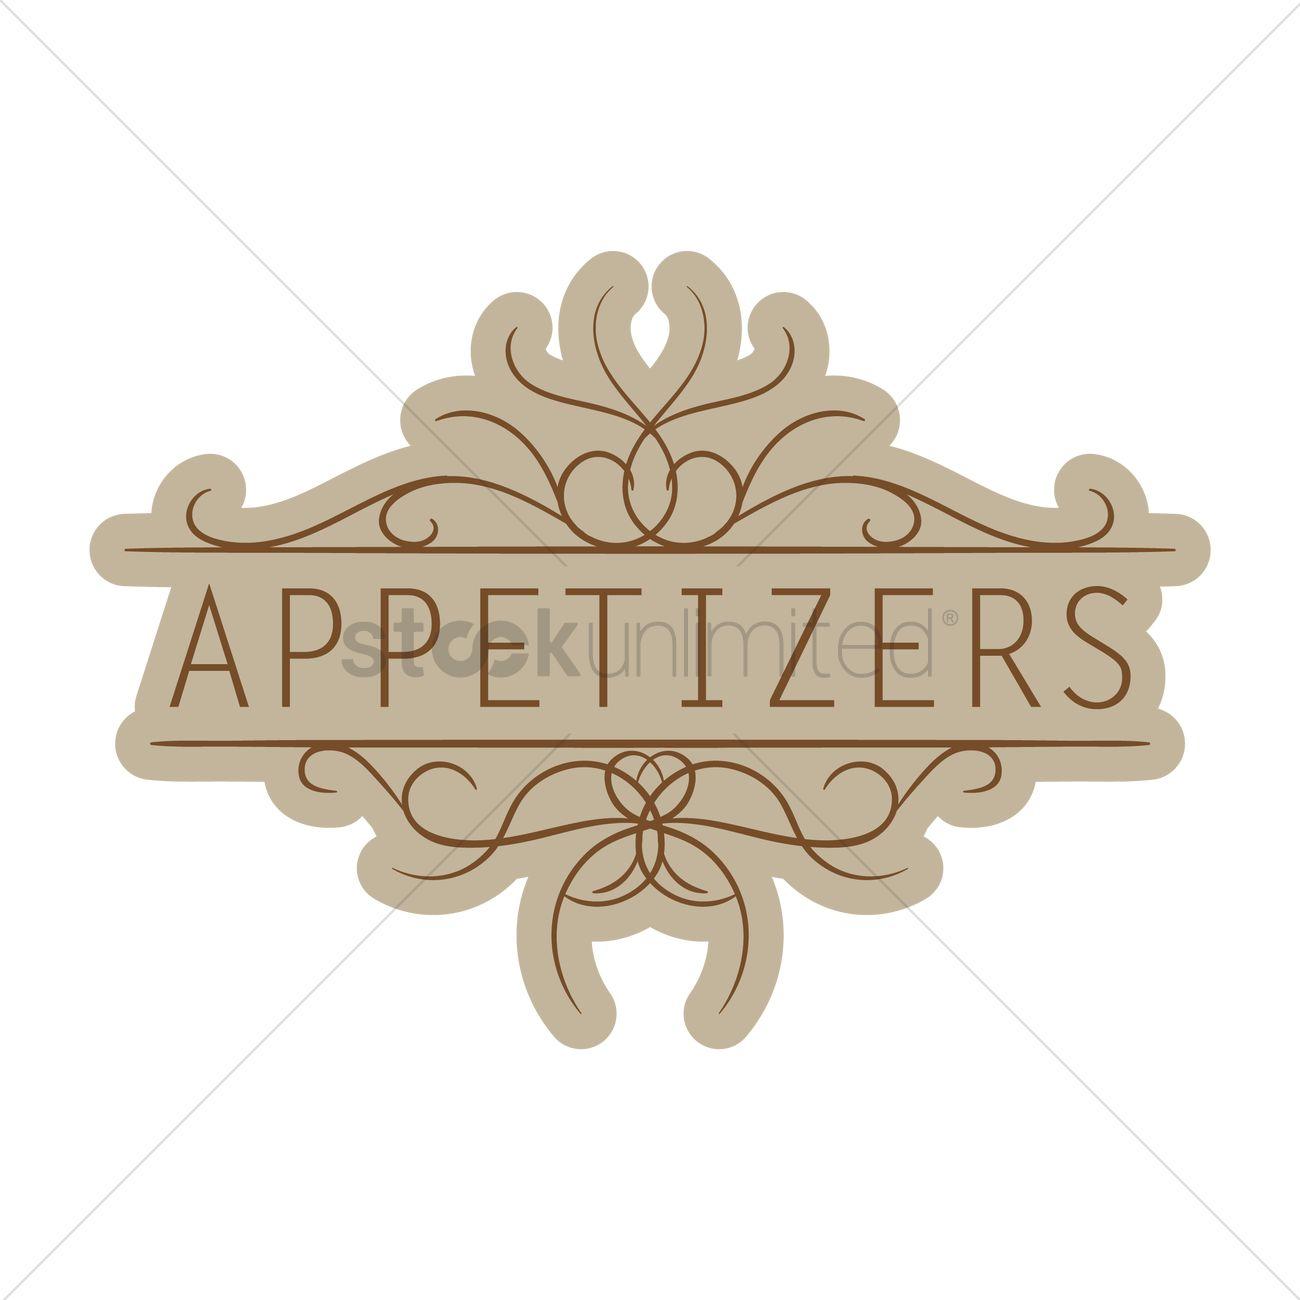 Appetizer Logo - Appetizers menu title Vector Image